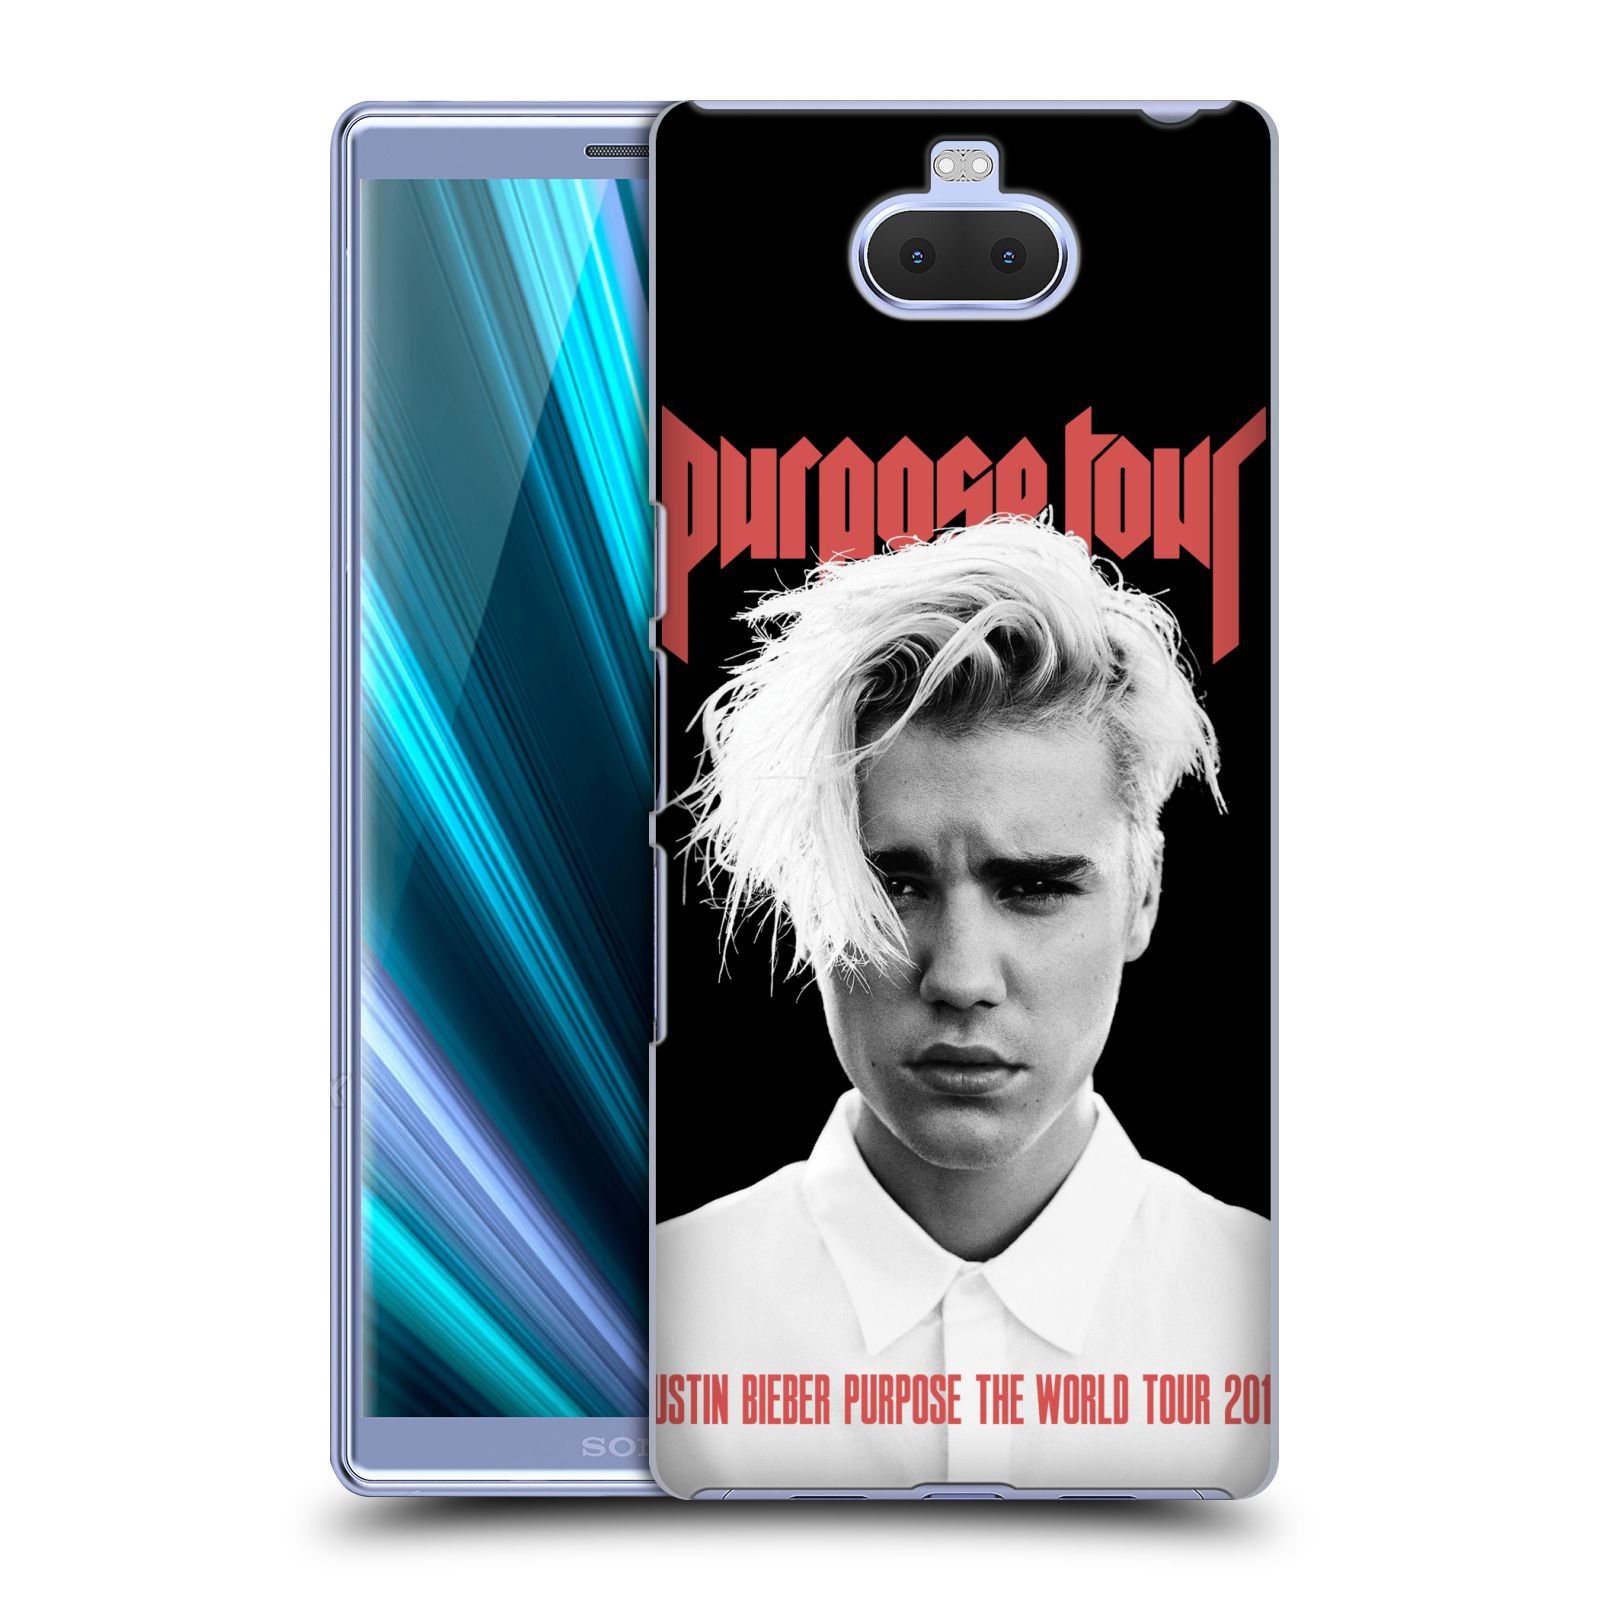 Pouzdro na mobil Sony Xperia 10 - Head Case - Justin Bieber foto Purpose tour černé pozadí